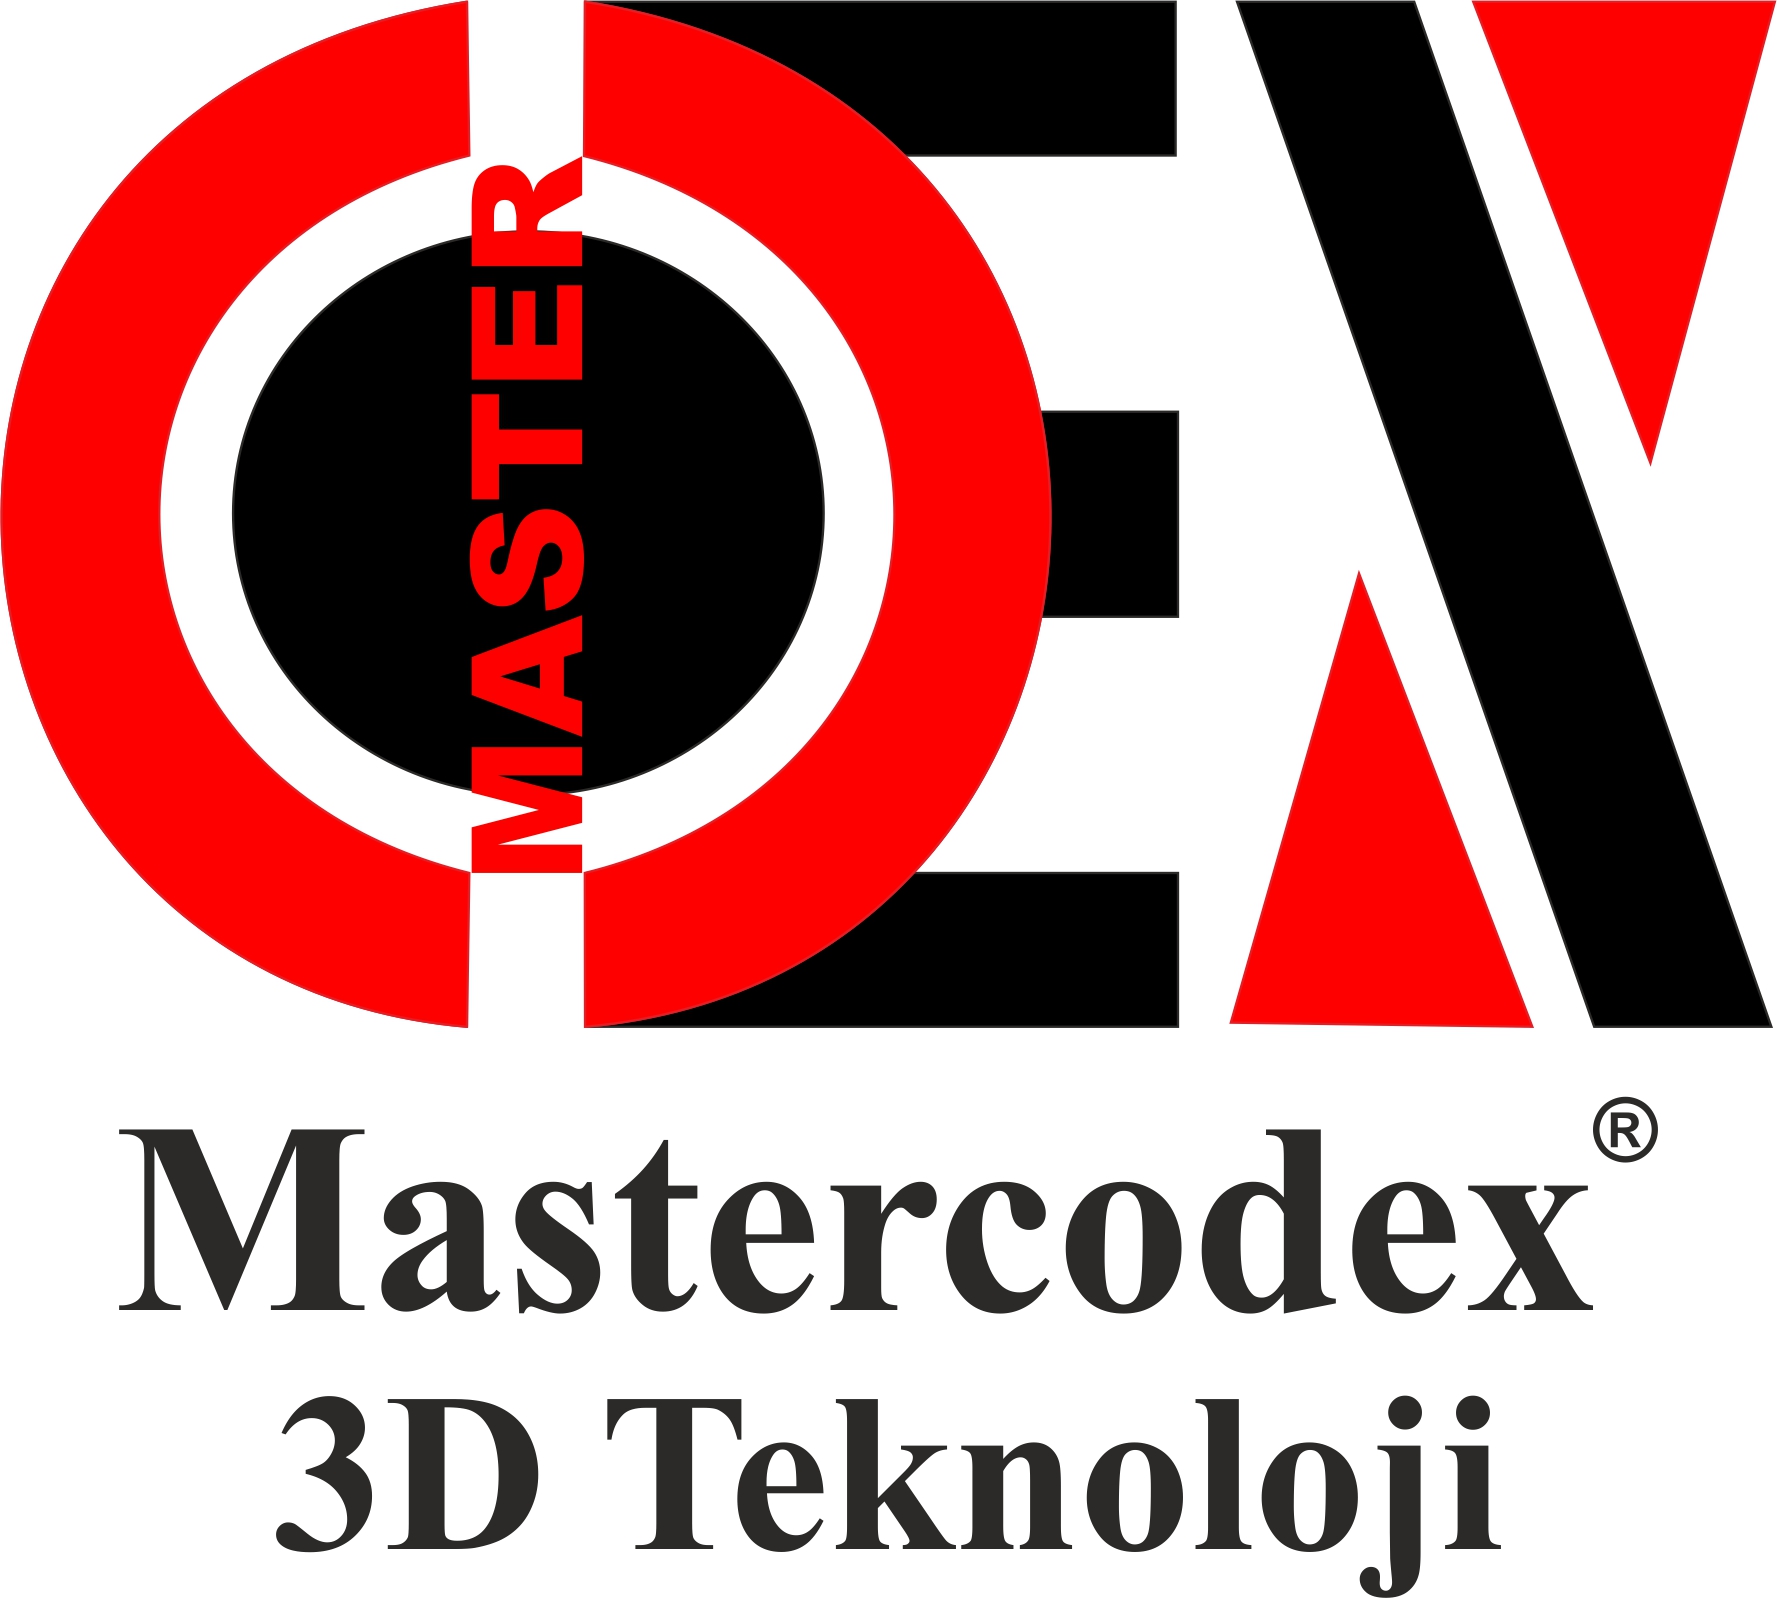 Mastercodex